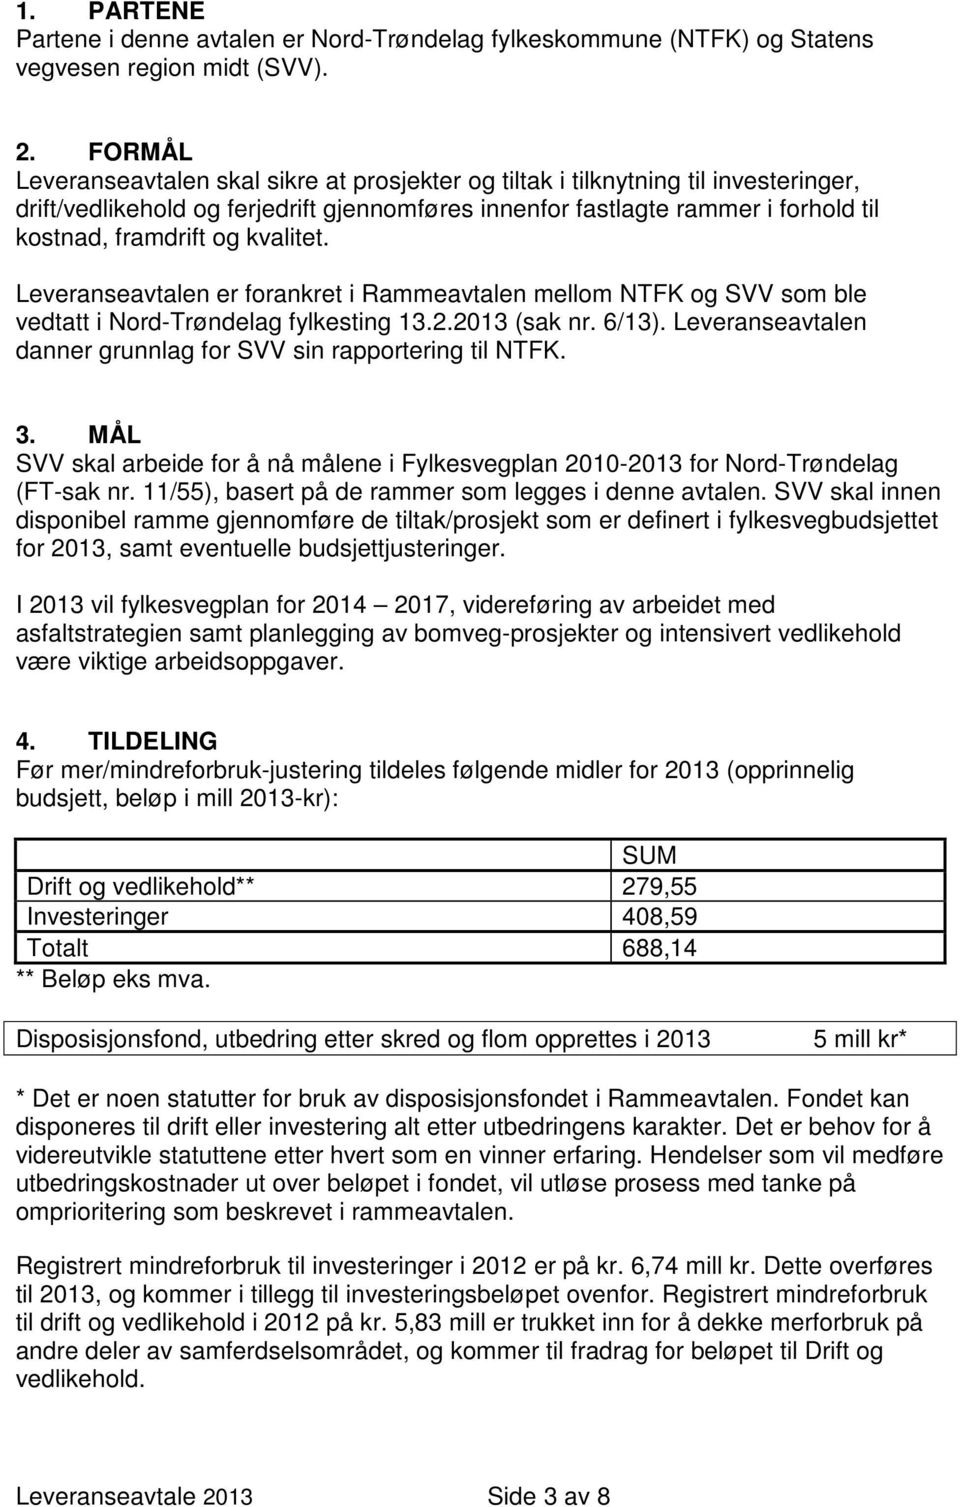 kvalitet. Leveranseavtalen er forankret i Rammeavtalen mellom NTFK og SVV som ble vedtatt i Nord-Trøndelag fylkesting 13.2.2013 (sak nr. 6/13).